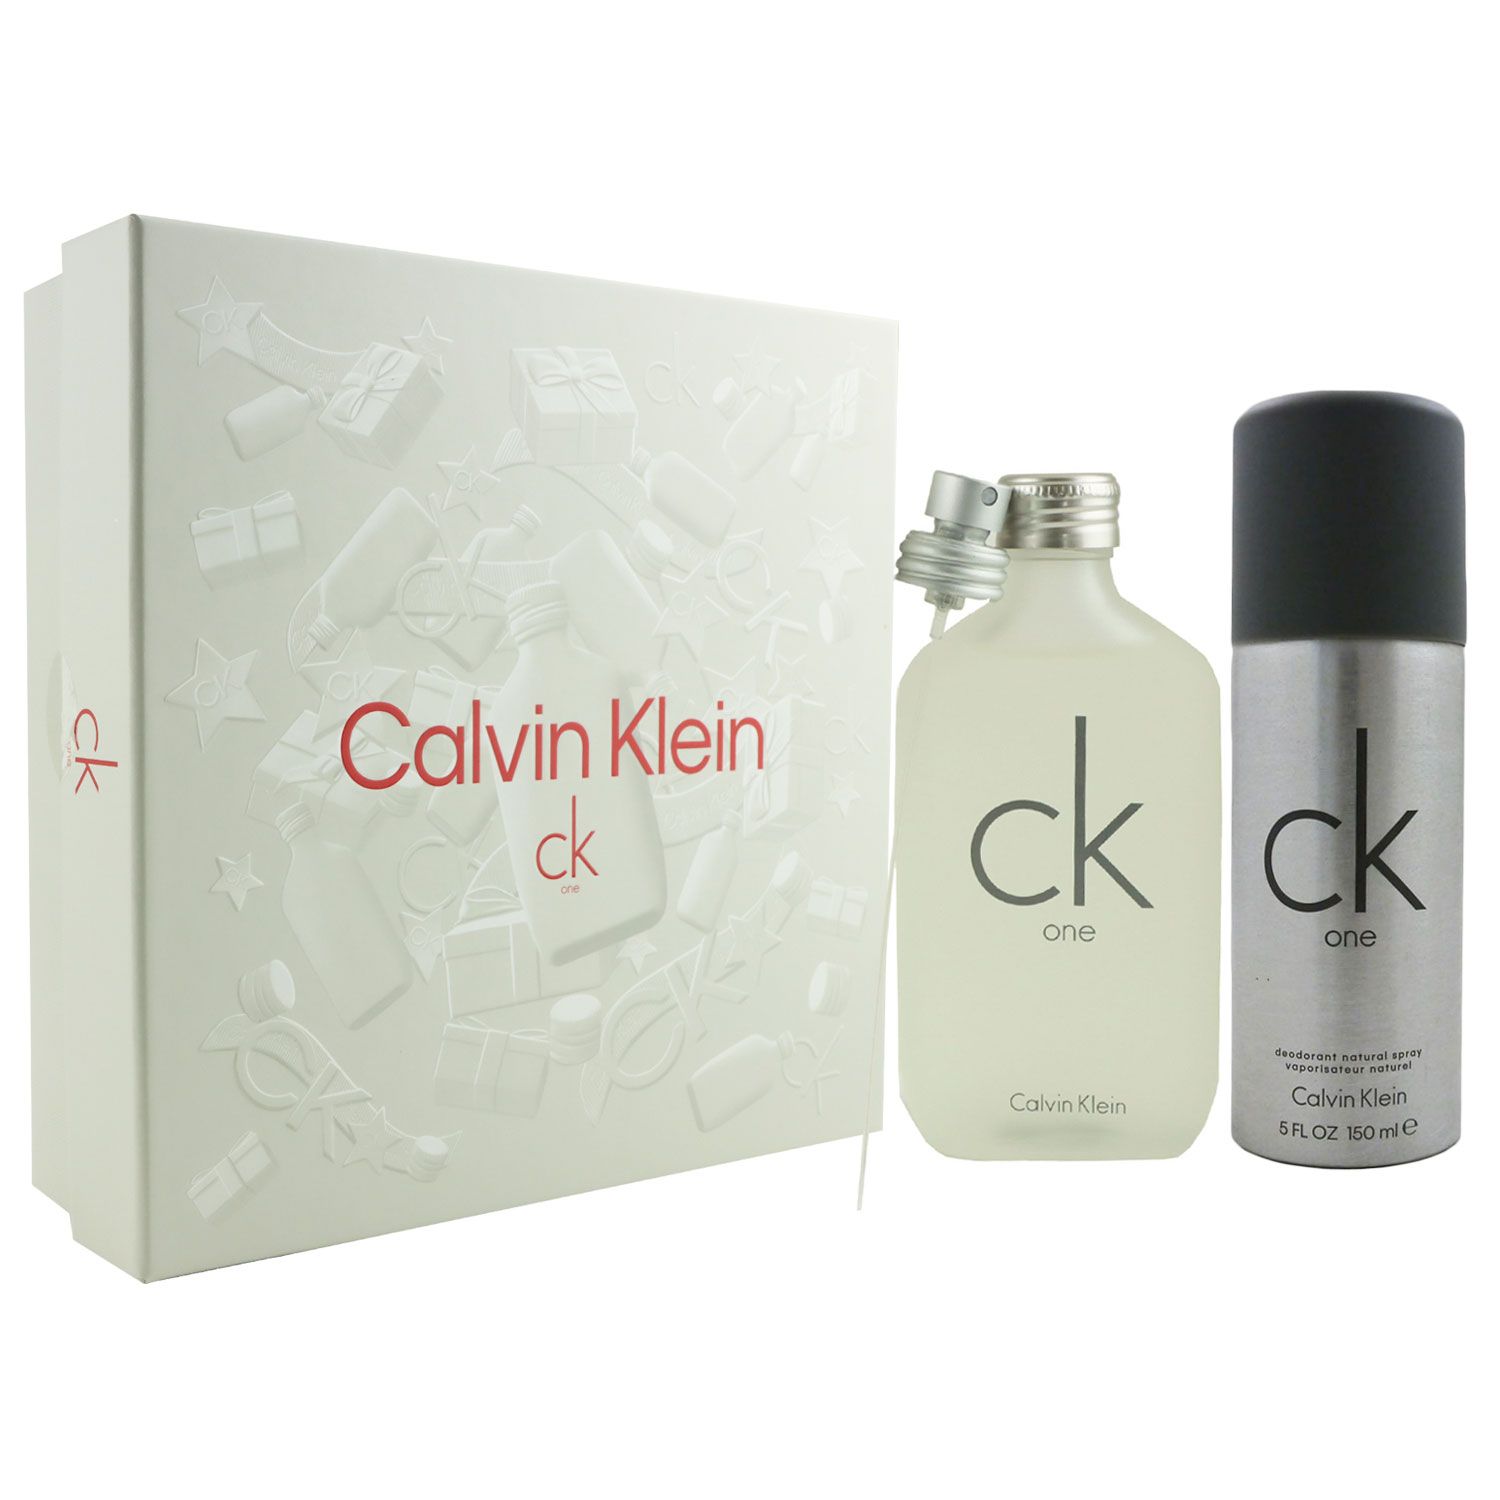 Calvin Klein CK One Set 100 ml EDT & 150 ml Deospray bei Riemax